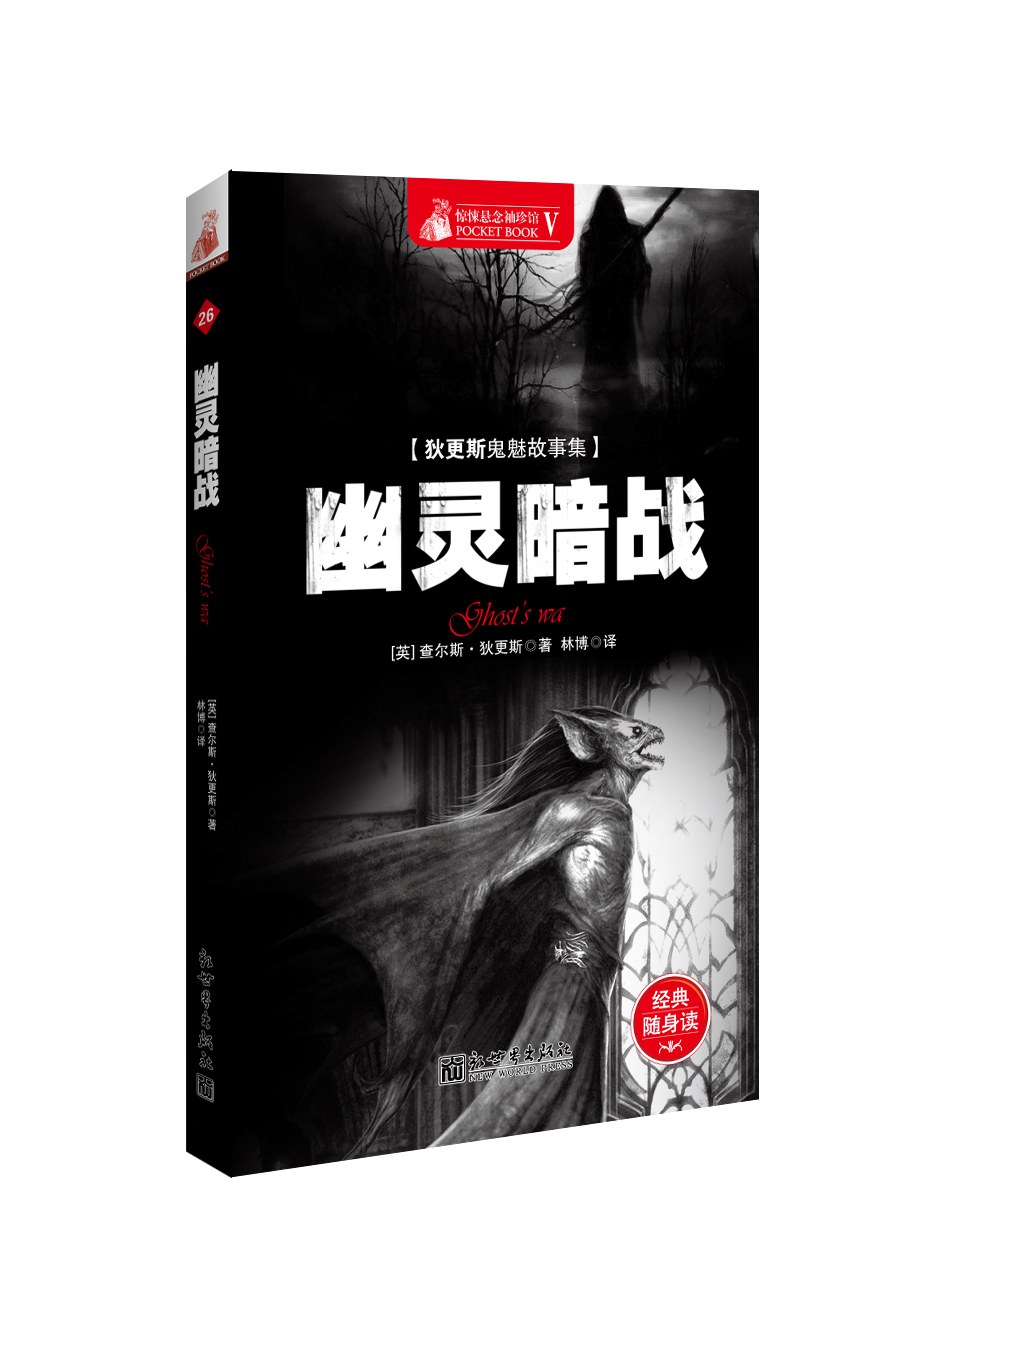 Charles Dickens: 幽灵暗战 (简体中文 language, 2013, 新世界出版社)